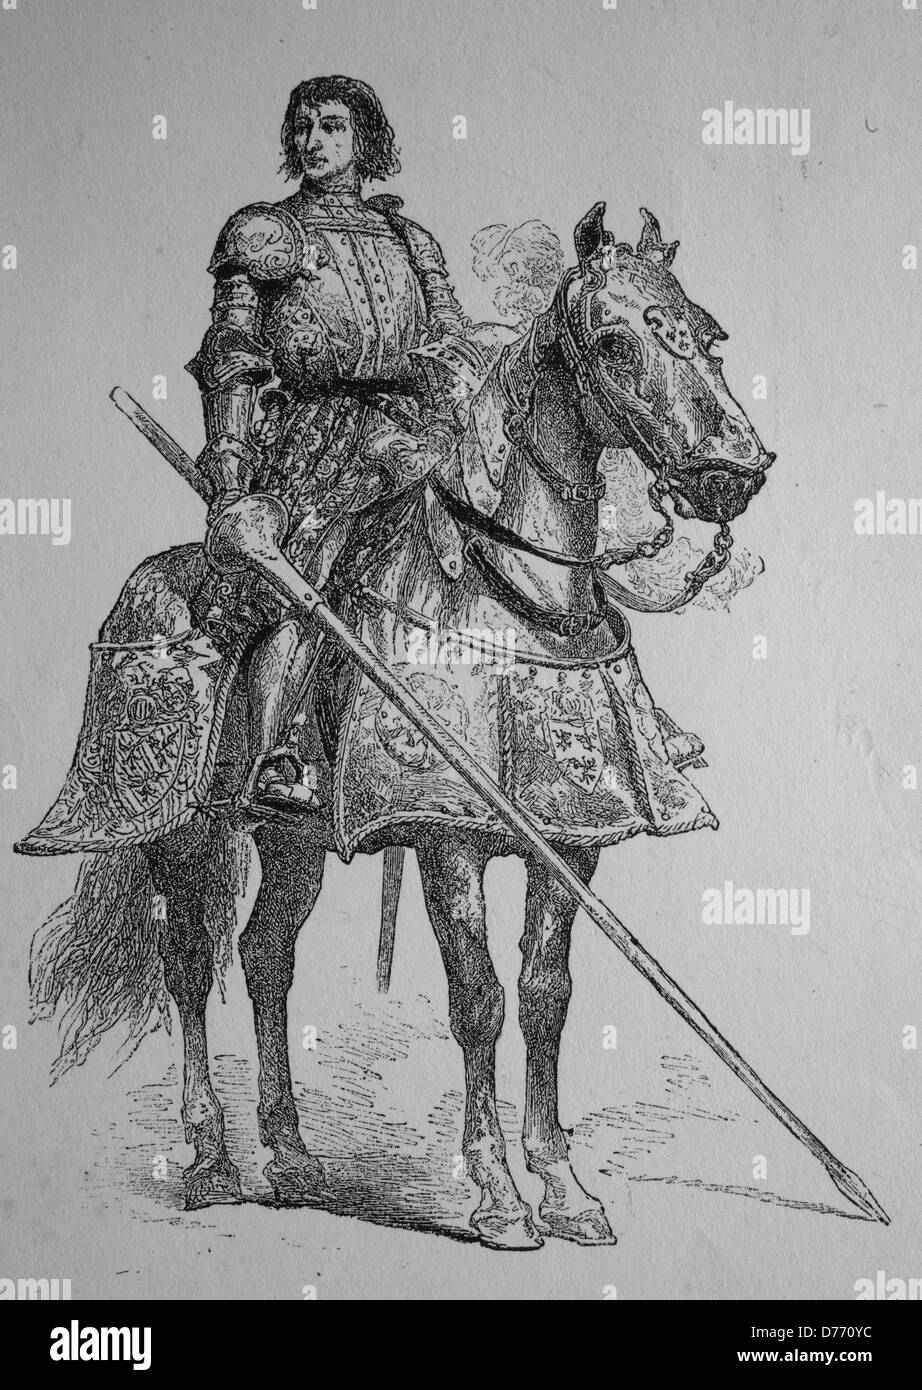 Pierre Terrail LeVieux, seigneur de Bayard, 1476 - 1524, connu comme le chevalier sans peur et sans reproche, une commande Française Banque D'Images